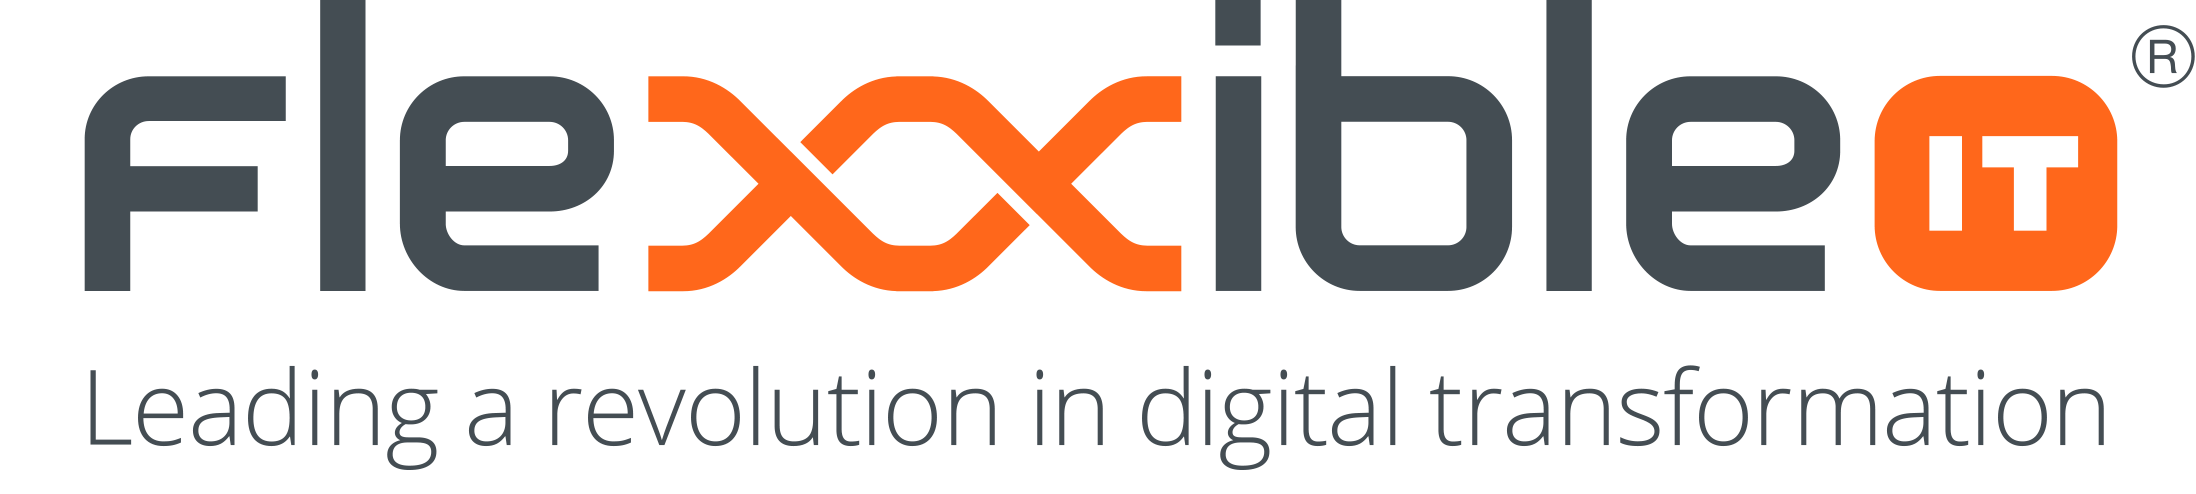 logo flexxibleit 2019